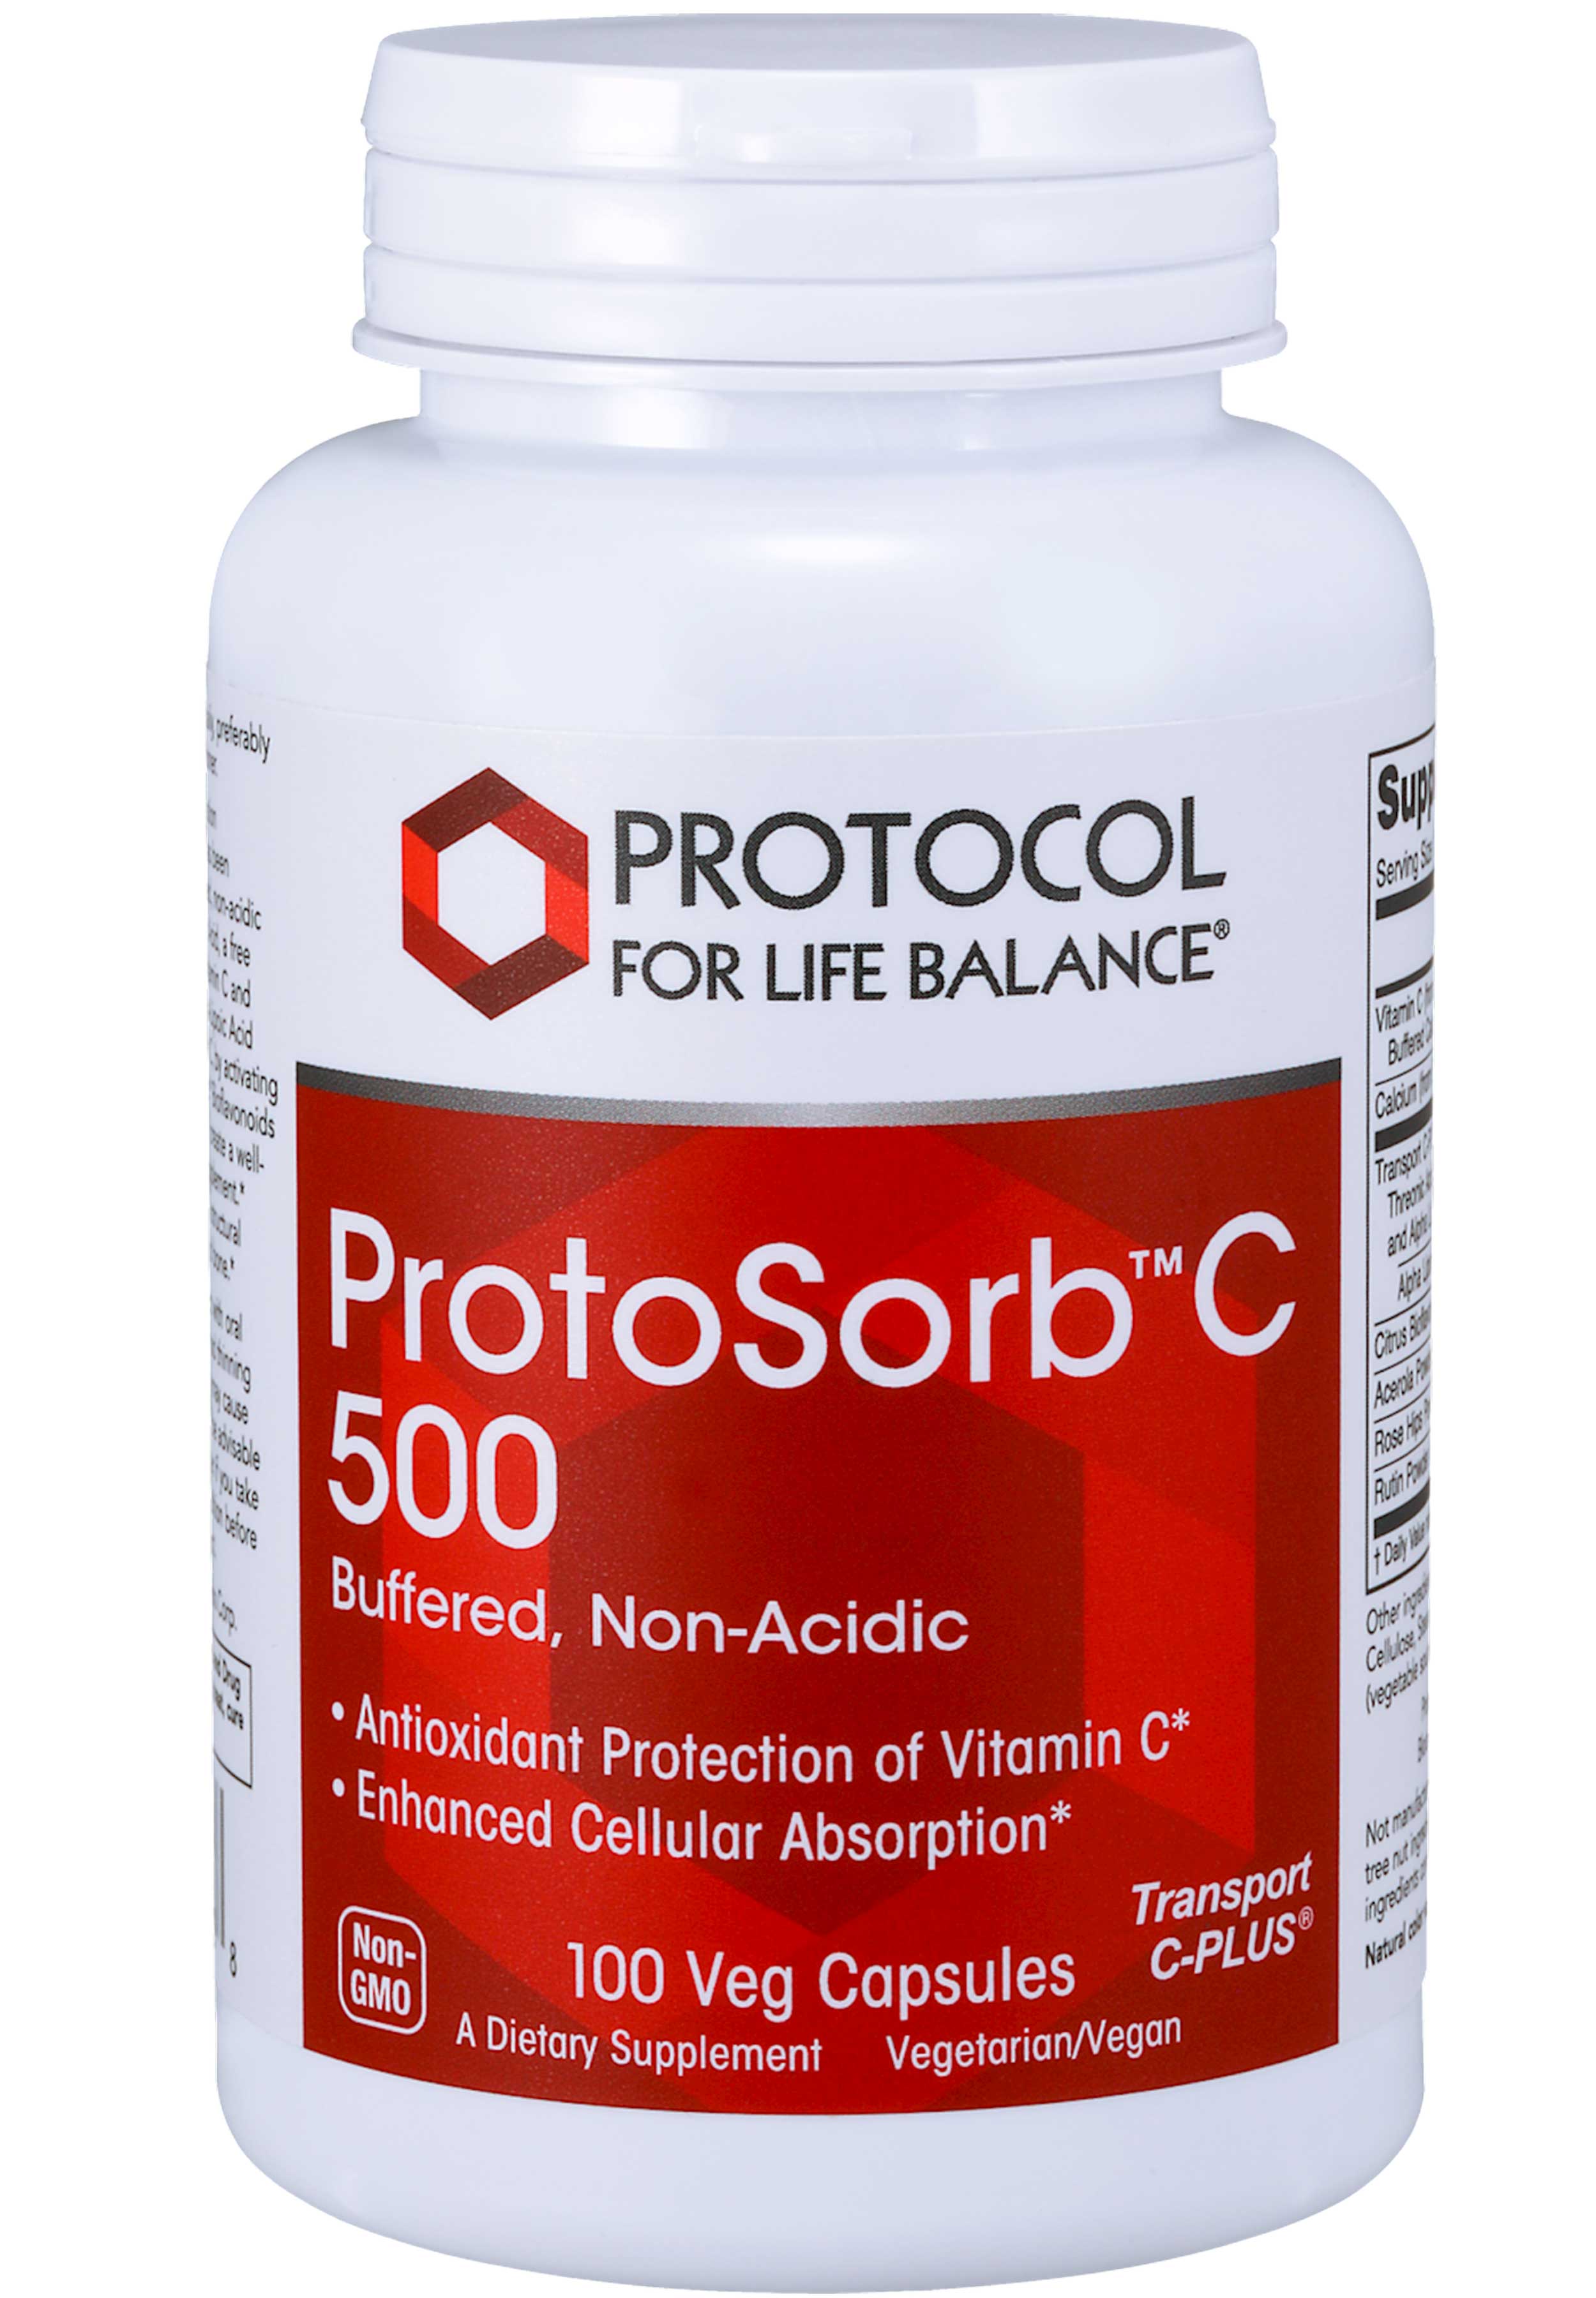 Protocol for Life Balance ProtoSorb C 500